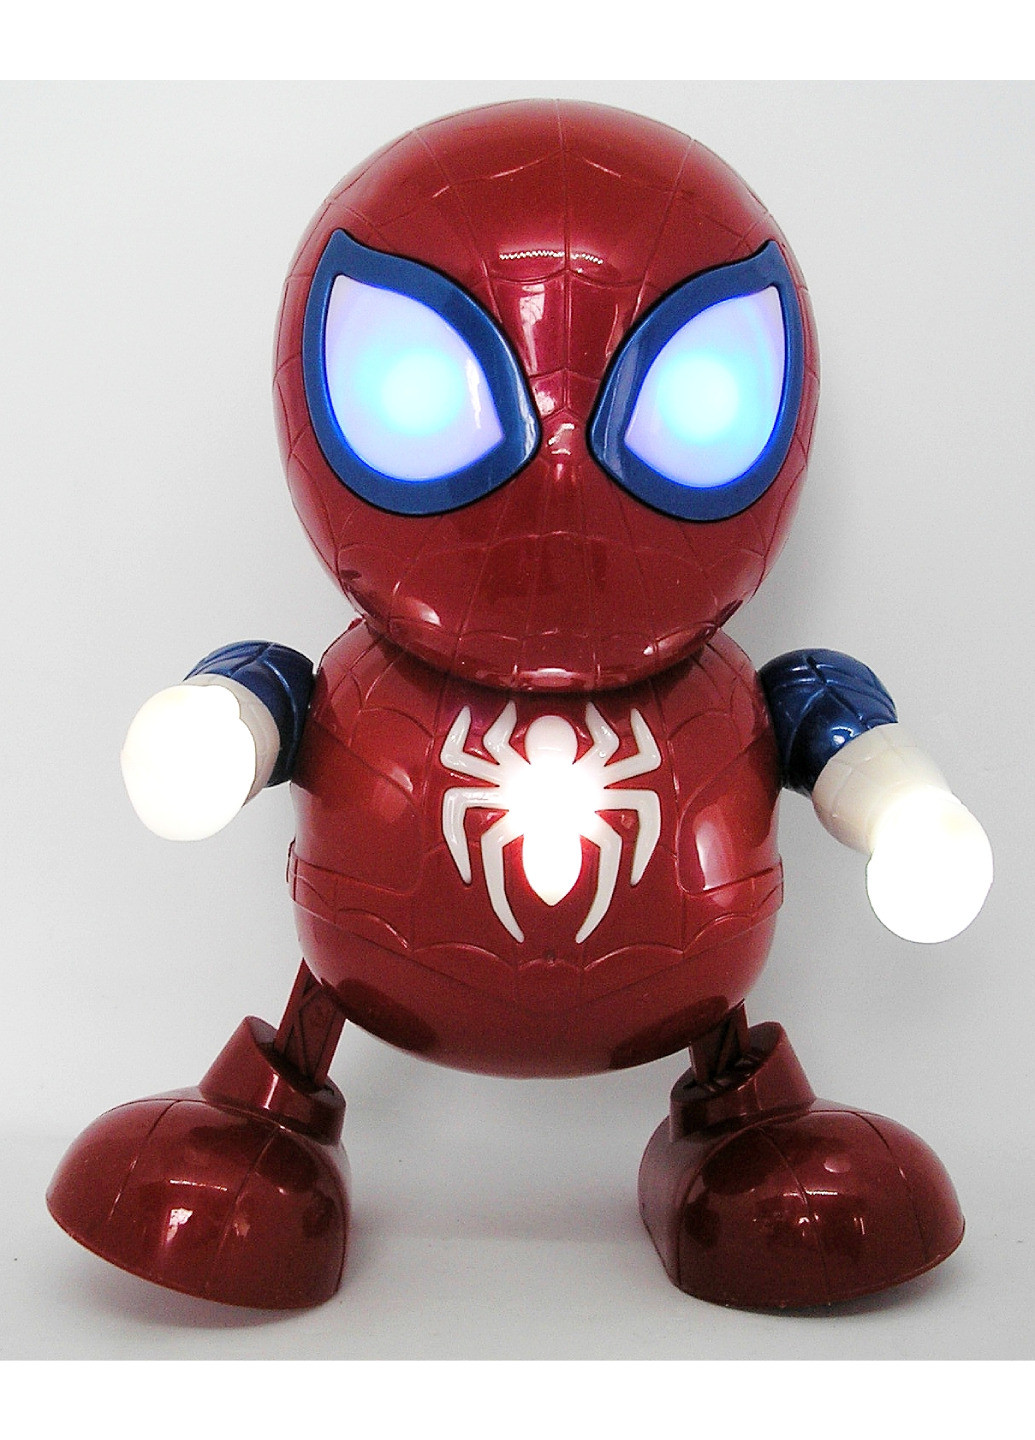 Робот человек паук танцующий интерактивная игрушка Dance Hero светящаяся игрушка Spider man супер герой No Brand (259812449)